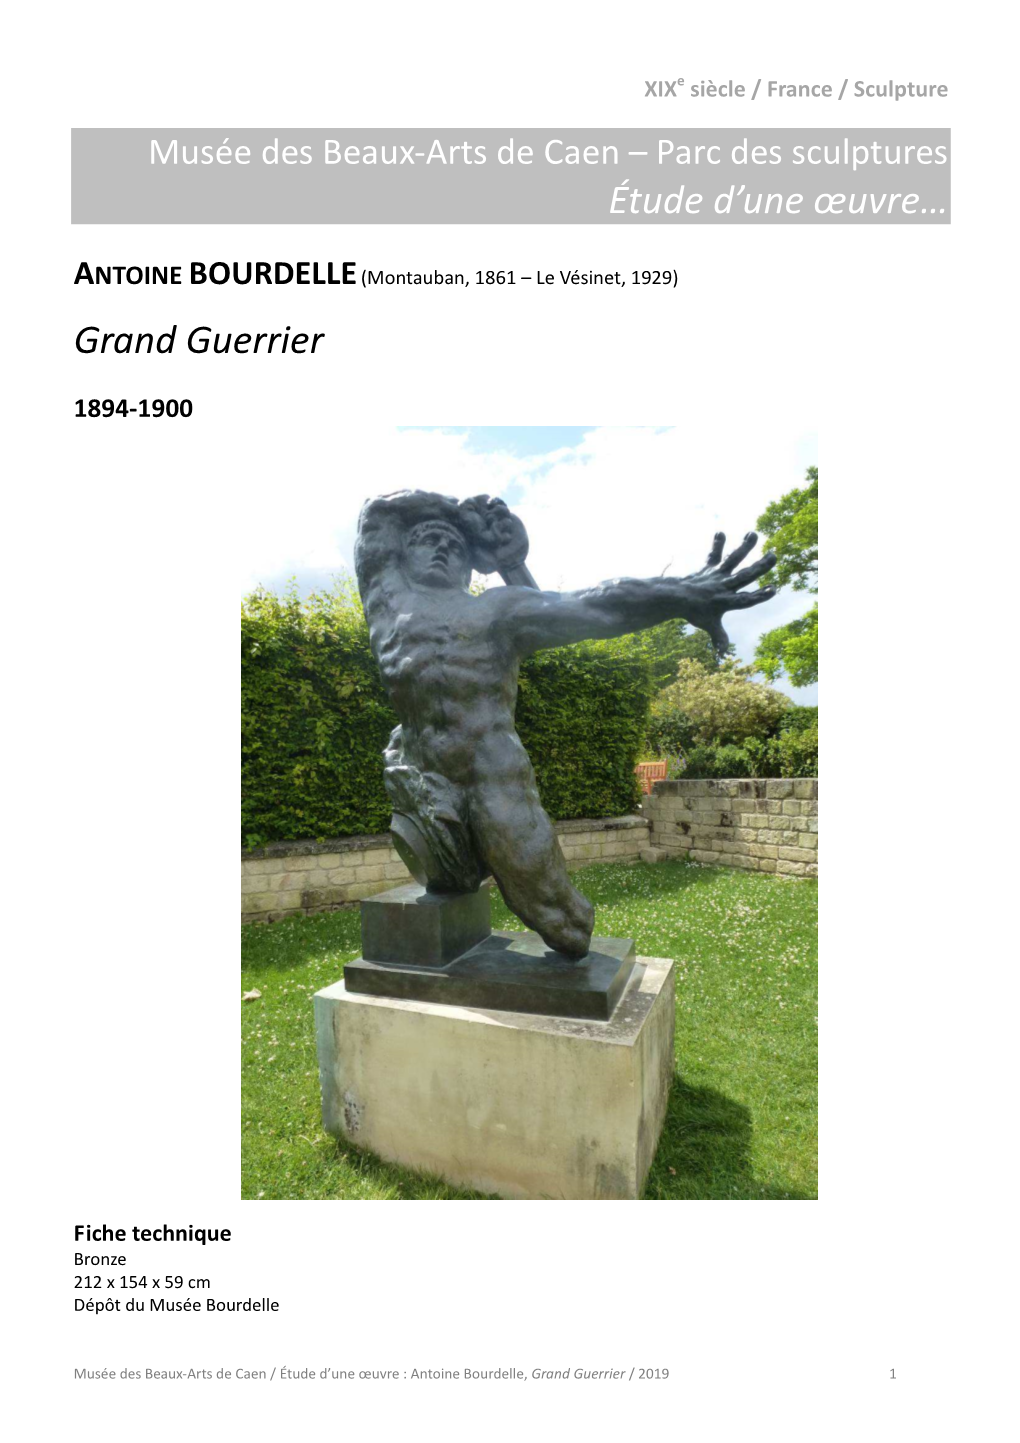 Antoine Bourdelle, Grand Guerrier / 2019 1